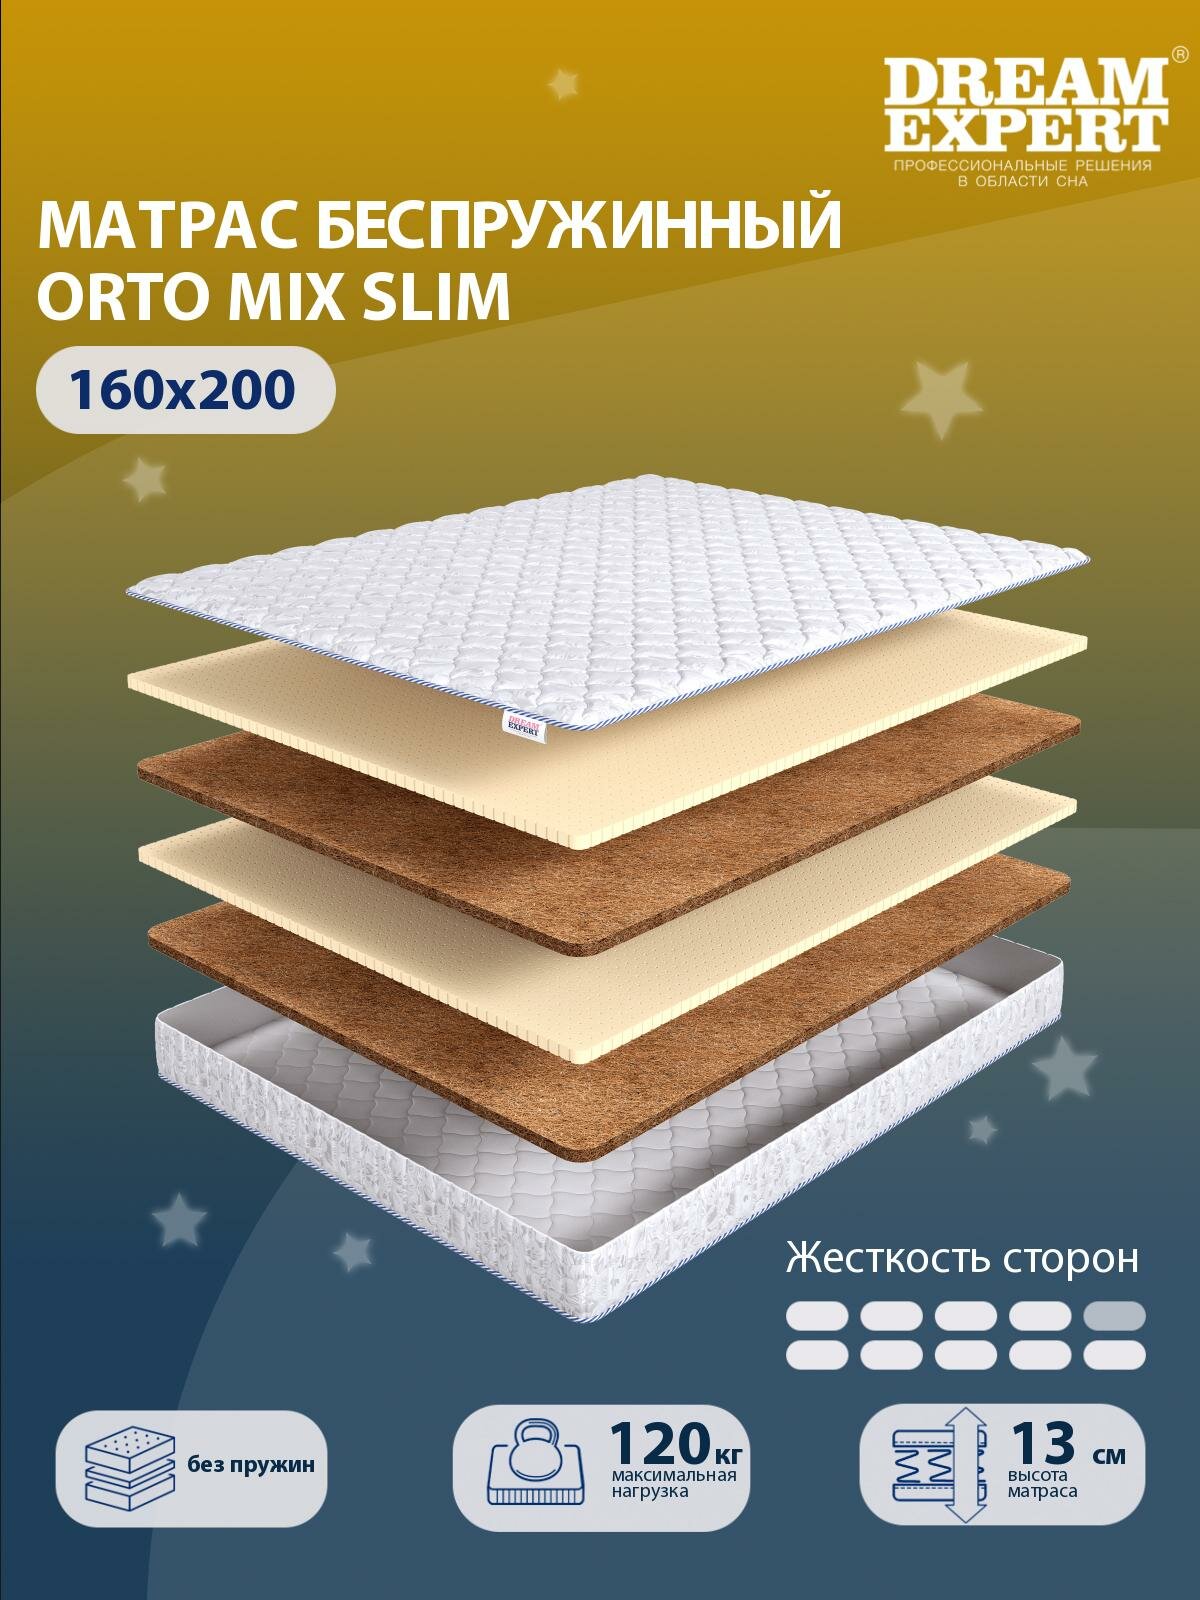 Матрас DreamExpert Orto Mix Slim жесткость высокая и выше средней, двуспальный, беспружинный, на кровать 160x200